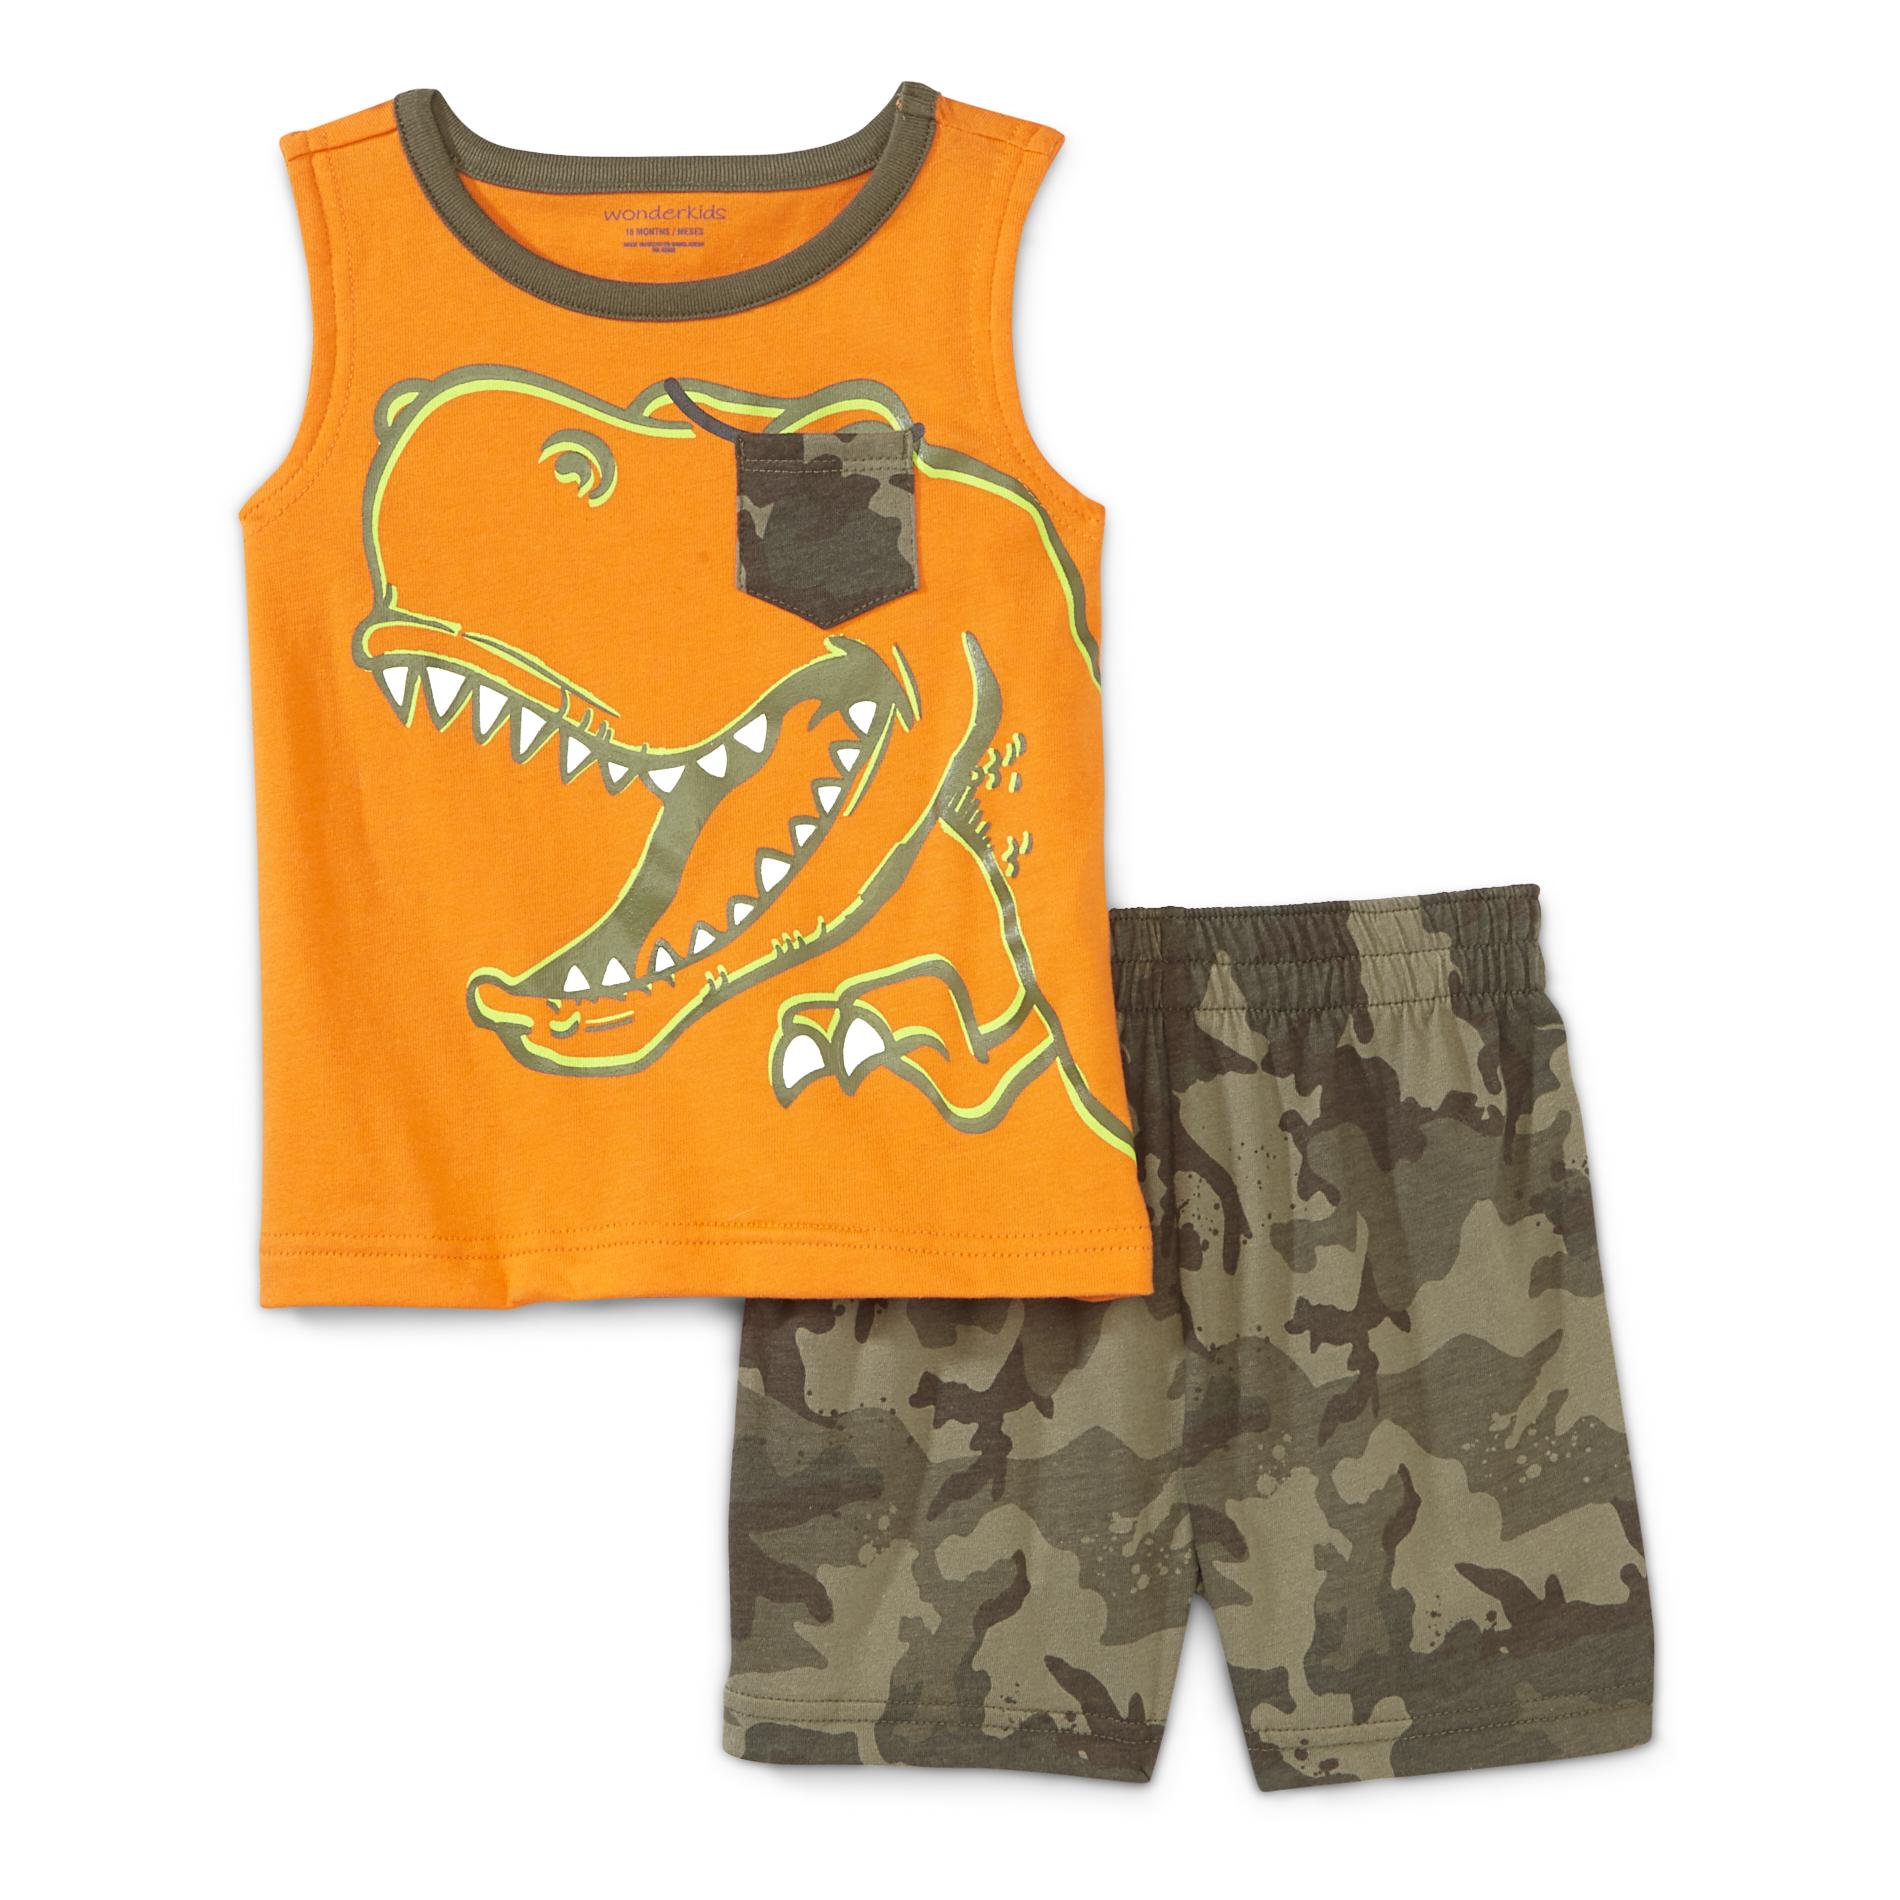 WonderKids Infant & Toddler Boy's Sleeveless Shirt & Shorts - T-Rex